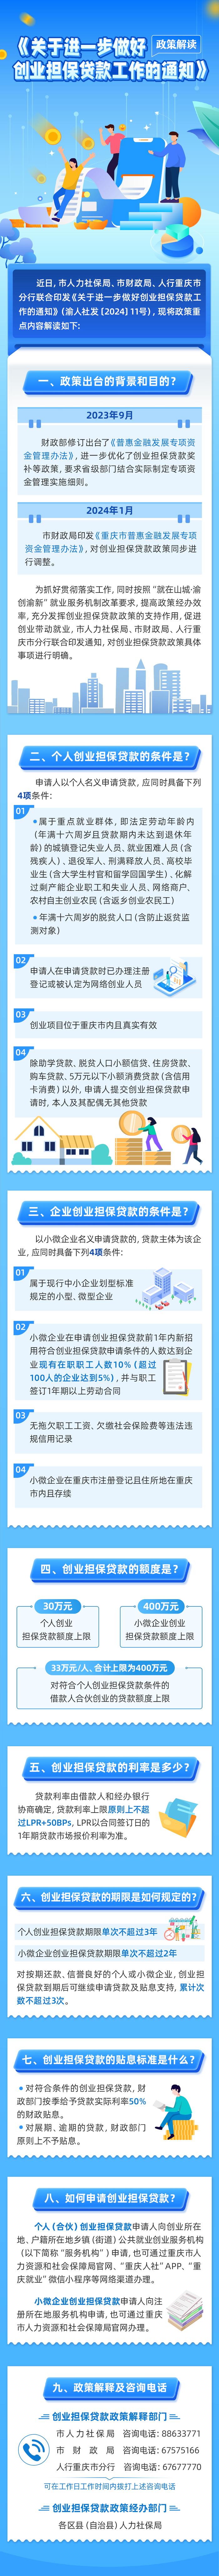 重庆小微企业创业担保贷款额度提高至400万元 贷款利率降低